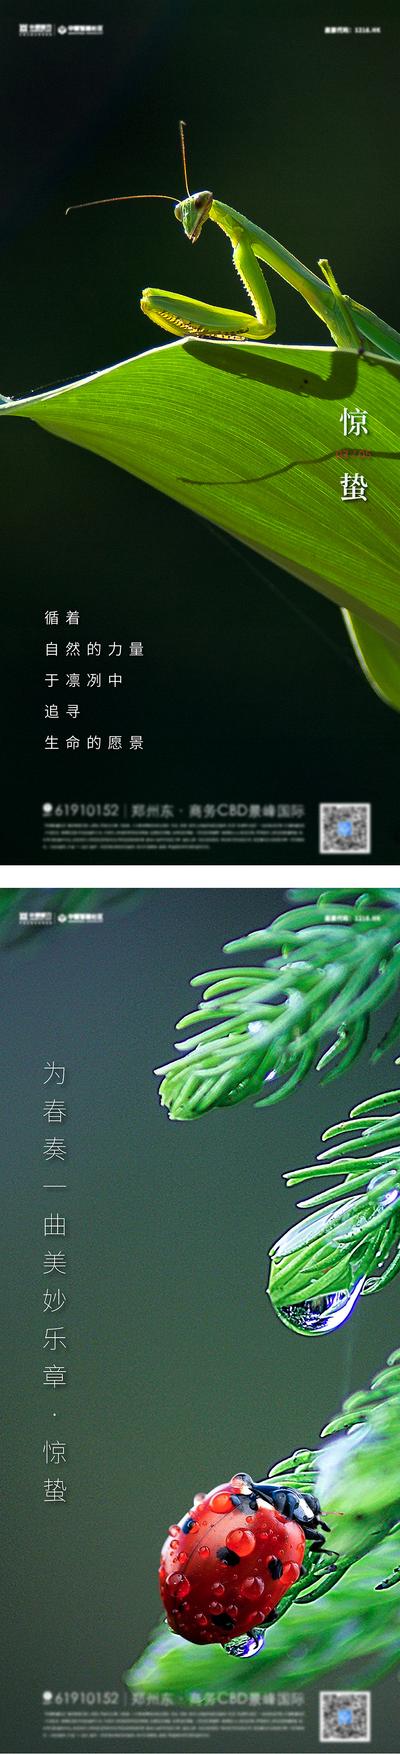 【南门网】海报  二十四节气  惊蛰  昆虫 苏醒 瓢虫 系列